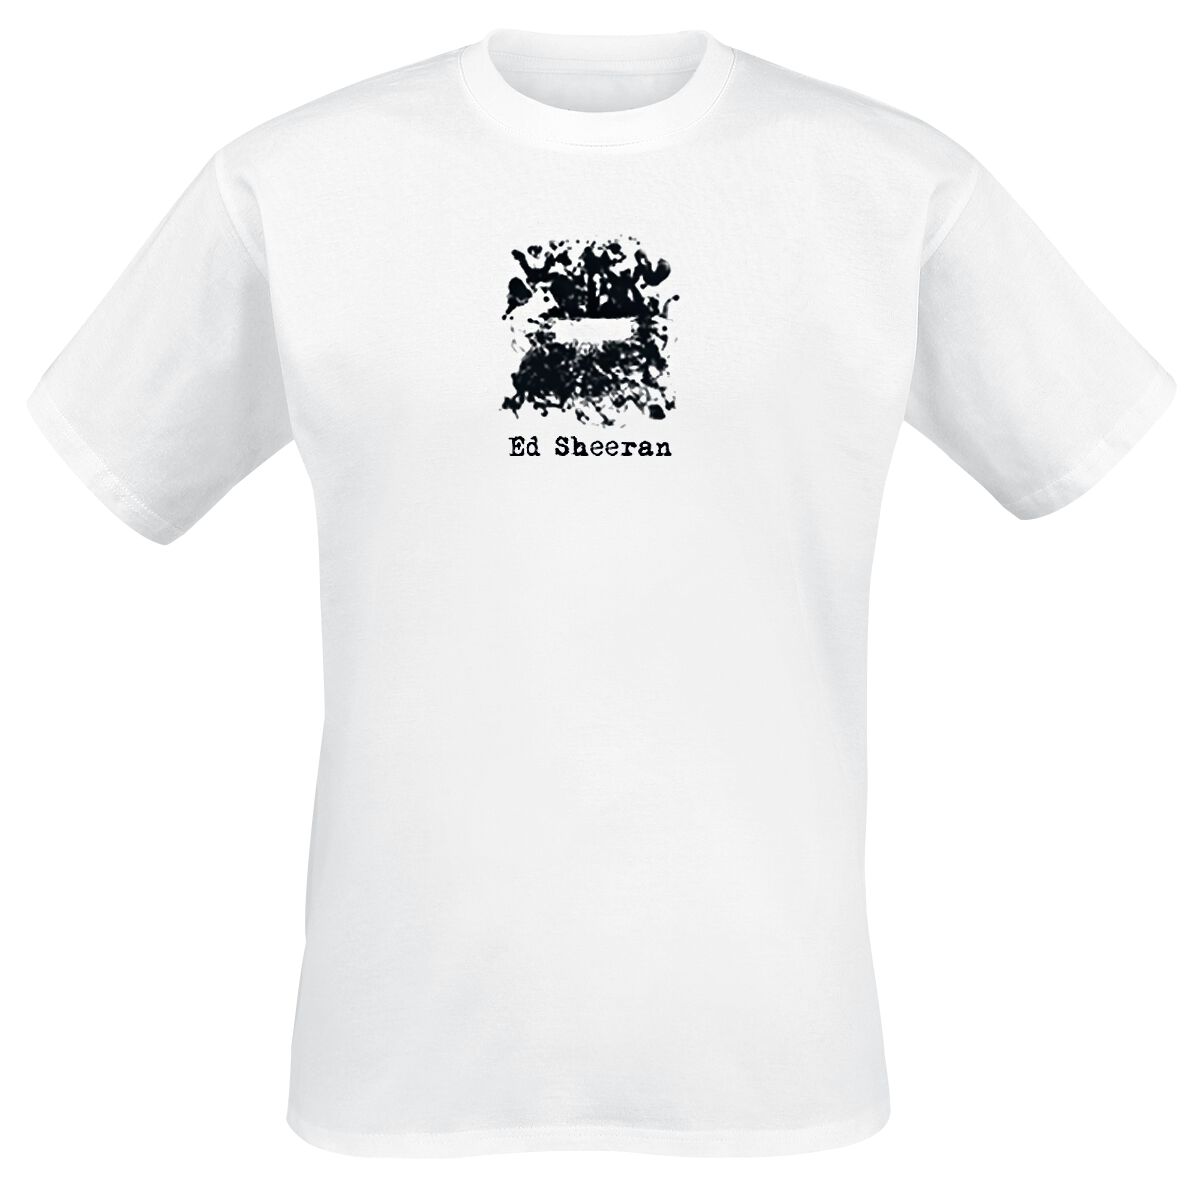 Ed Sheeran T-Shirt - Subtract Squidge Collage - M bis XL - für Männer - Größe M - weiß  - Lizenziertes Merchandise!